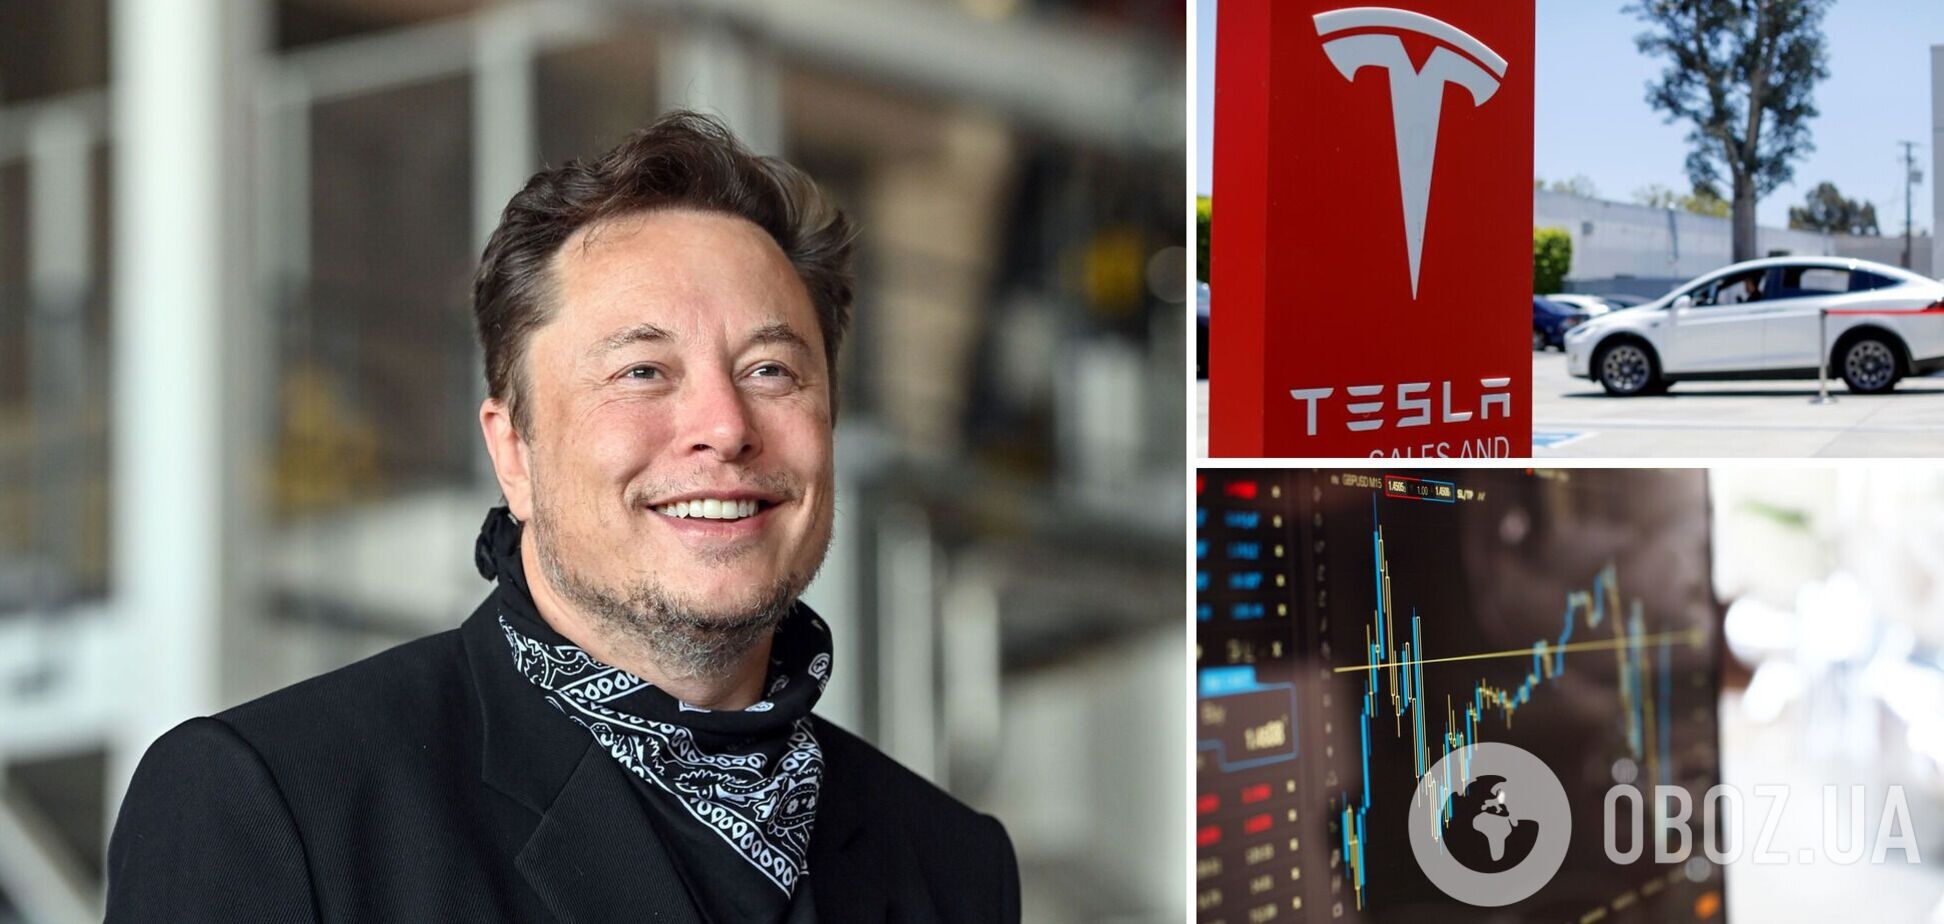 Маск розбагатів на Tesla, незважаючи на продаж частини акцій